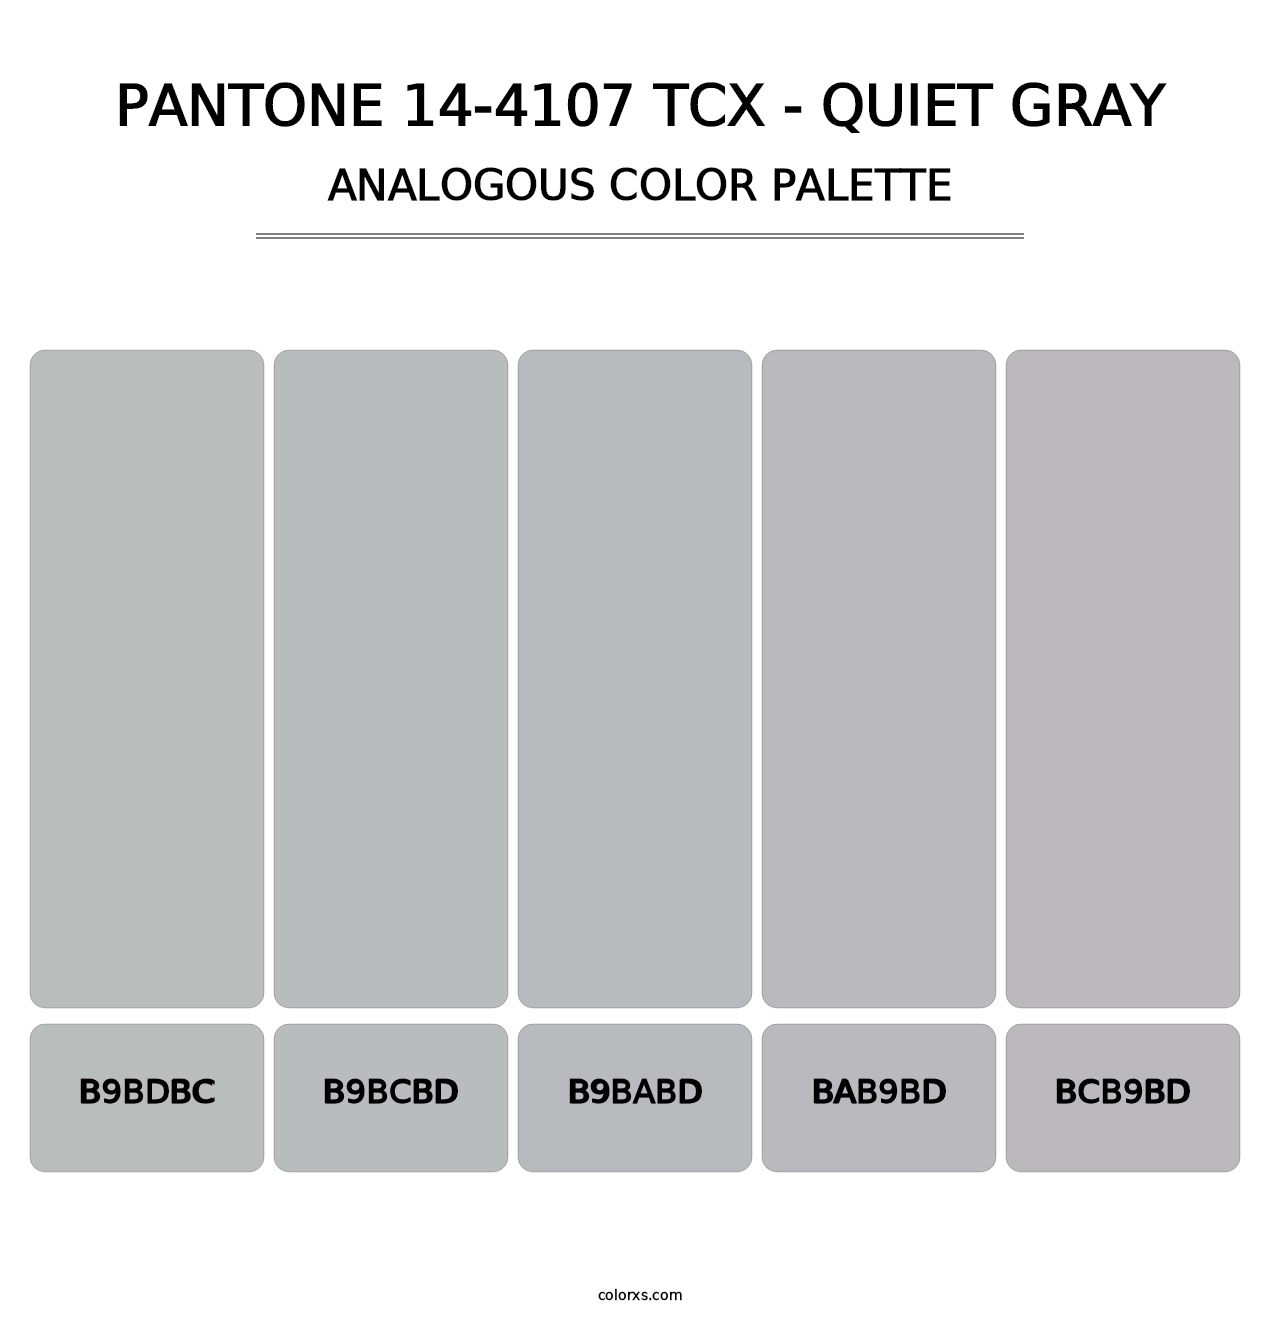 PANTONE 14-4107 TCX - Quiet Gray - Analogous Color Palette